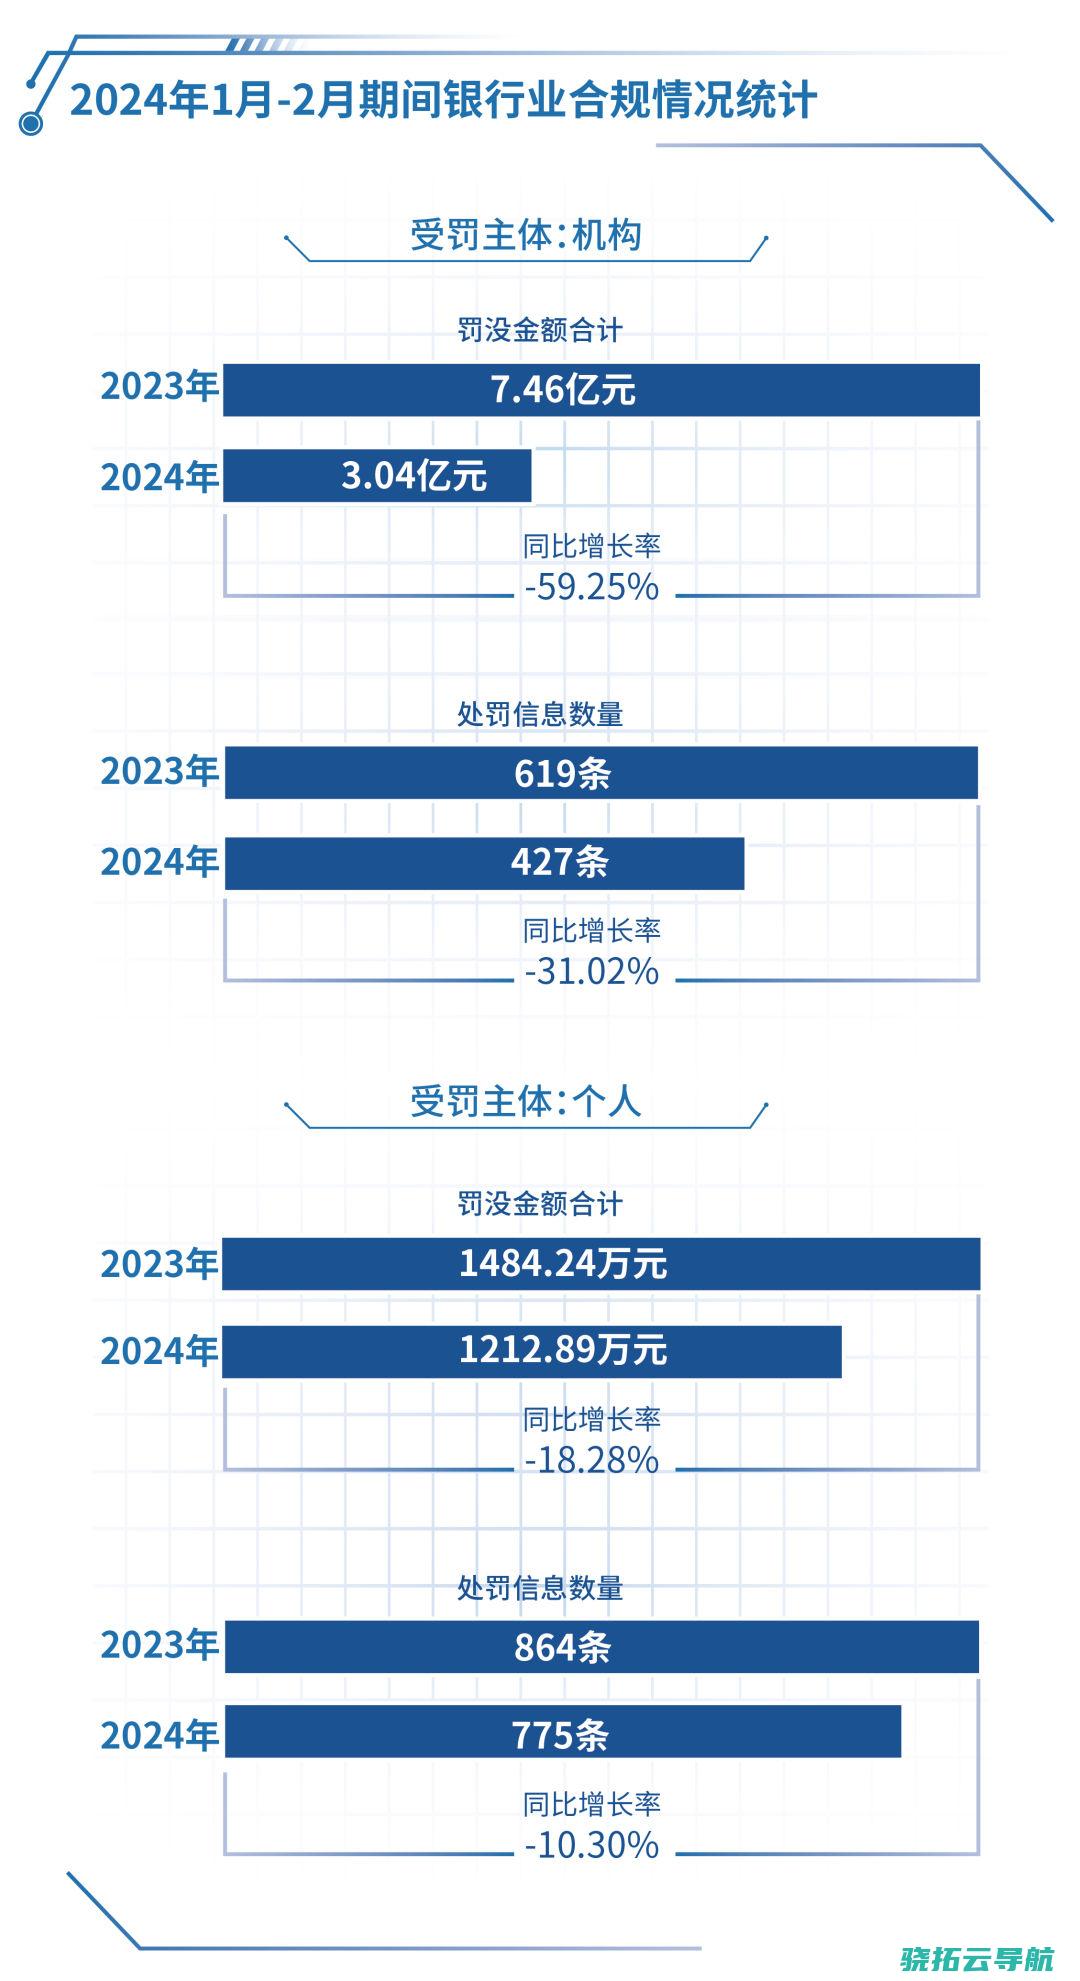 2024年1月-2月时期银行业合规状况统计(冯庆超/图)